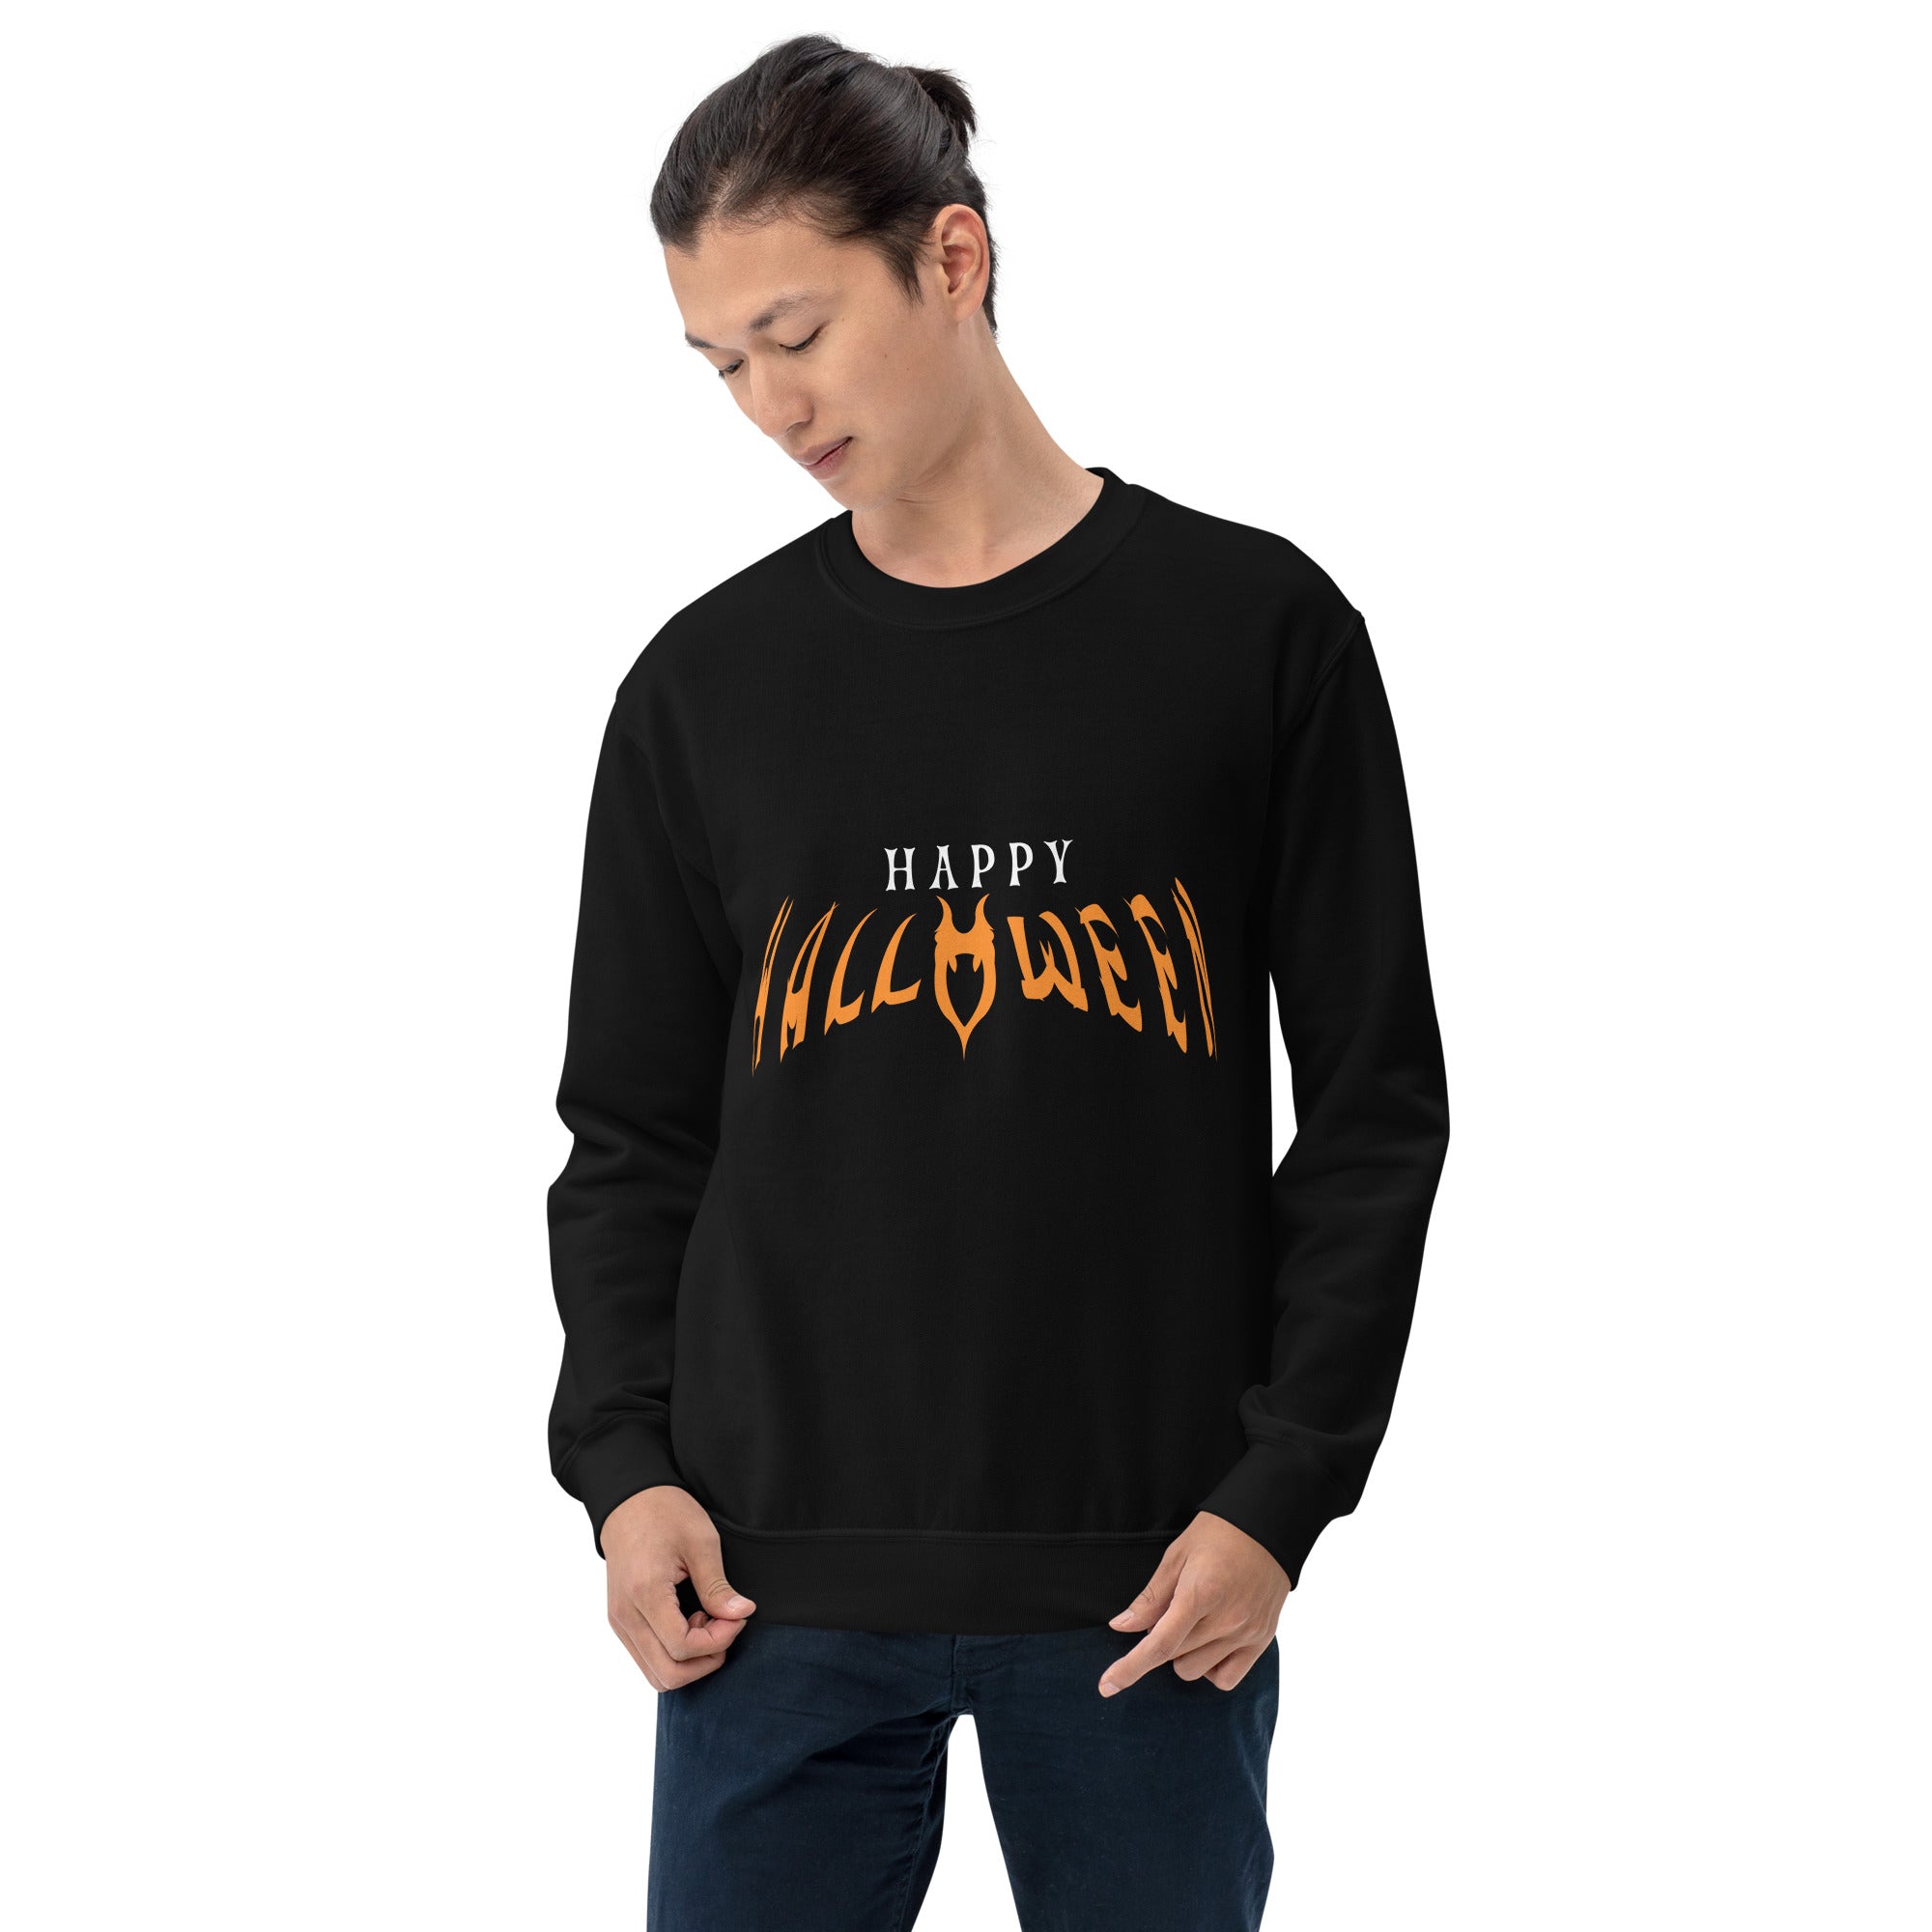 Happy Halloween Men's Sweatshirt